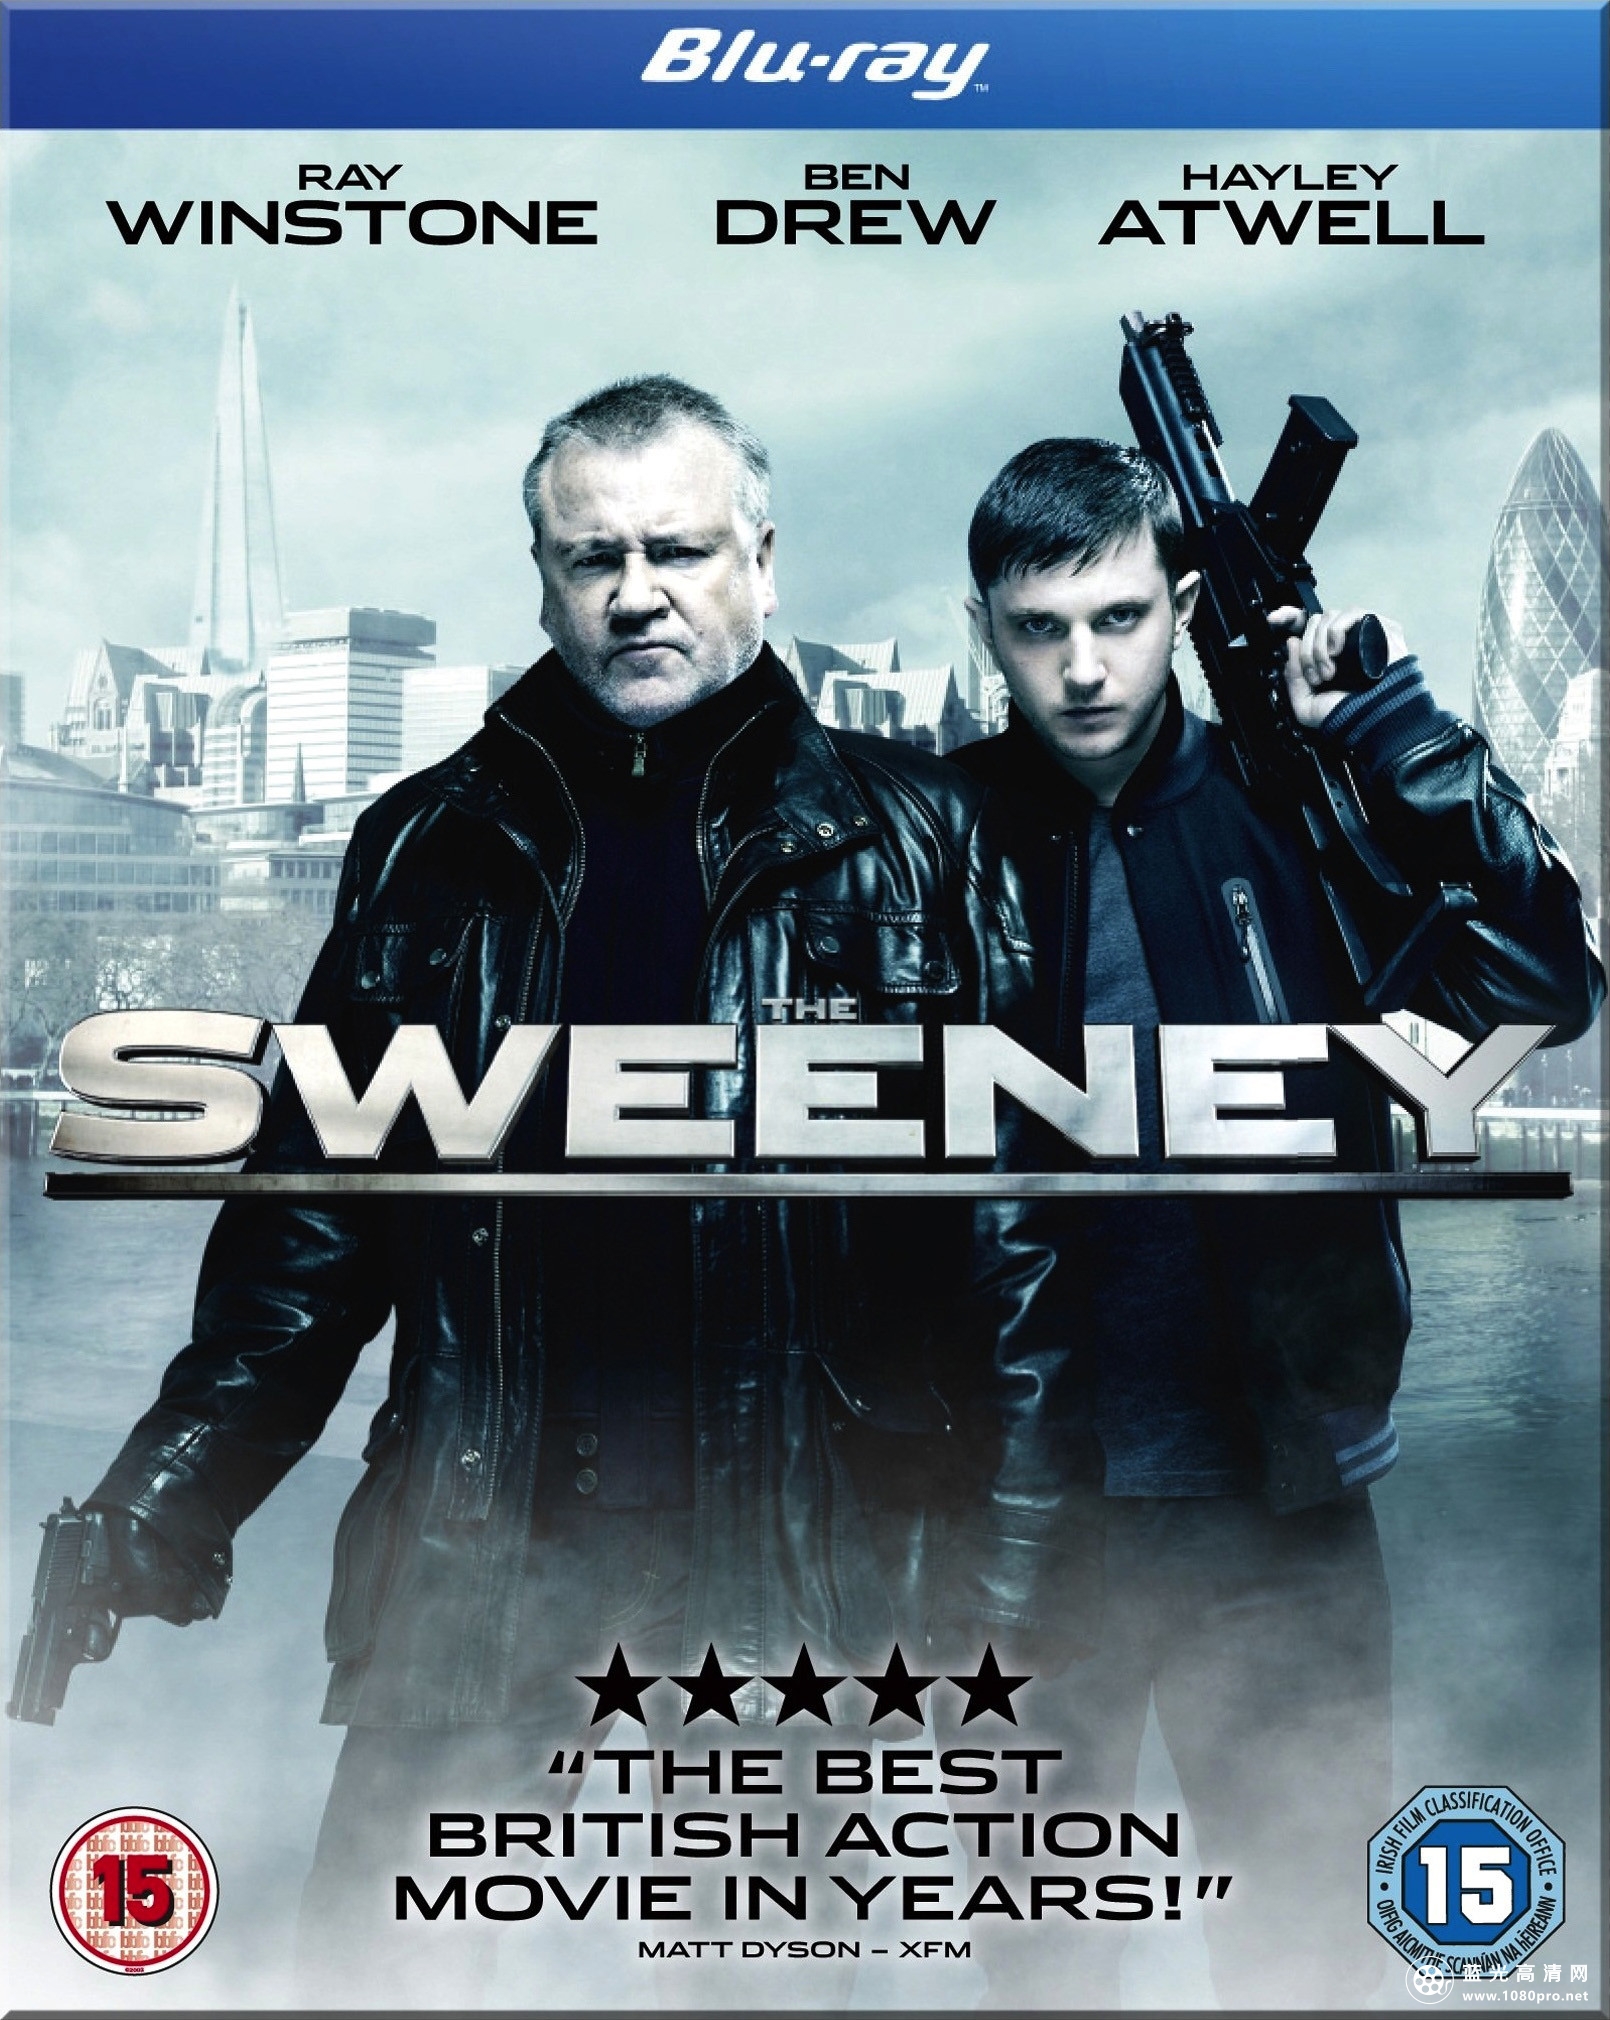 除暴安良 The.Sweeney.2012.BluRay.720p.DTS.x264-CHD 6.54G-1.jpg